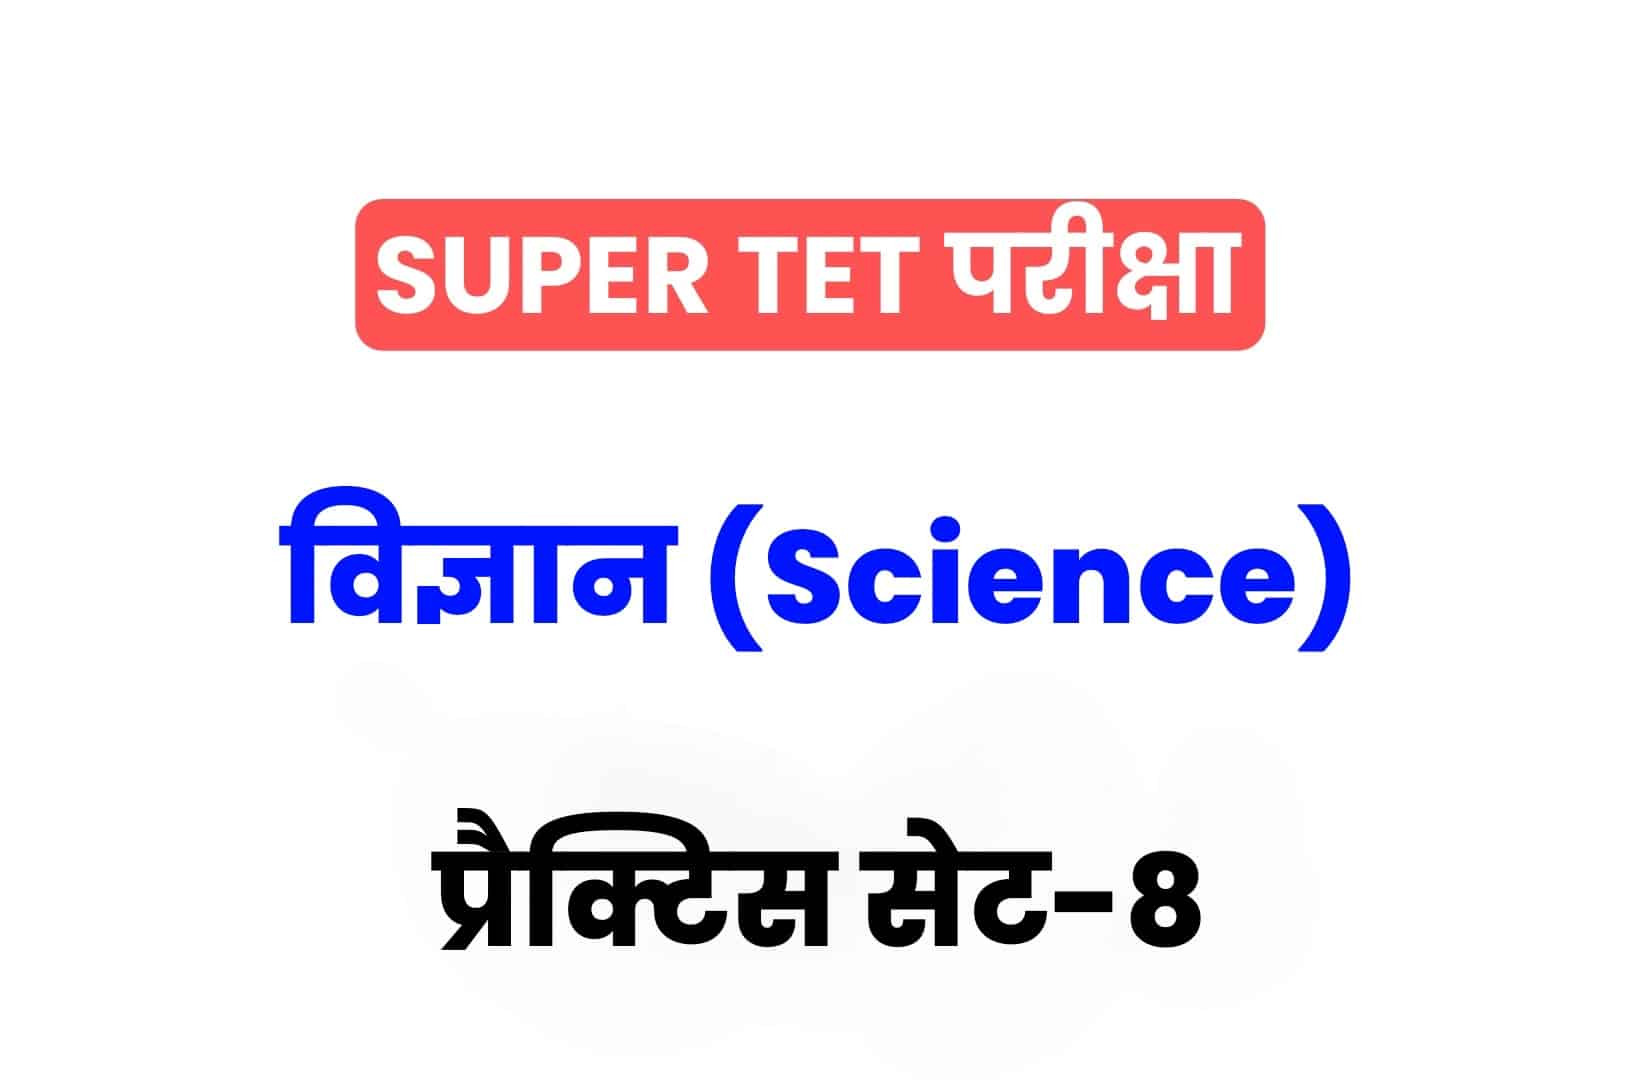 SUPER TET 2022 Science प्रैक्टिस सेट 08: विज्ञान के 15 ऐसे सवाल जो आगामी सुपर टेट परीक्षा में पूछे जा सकते हैं, अवश्य देखें